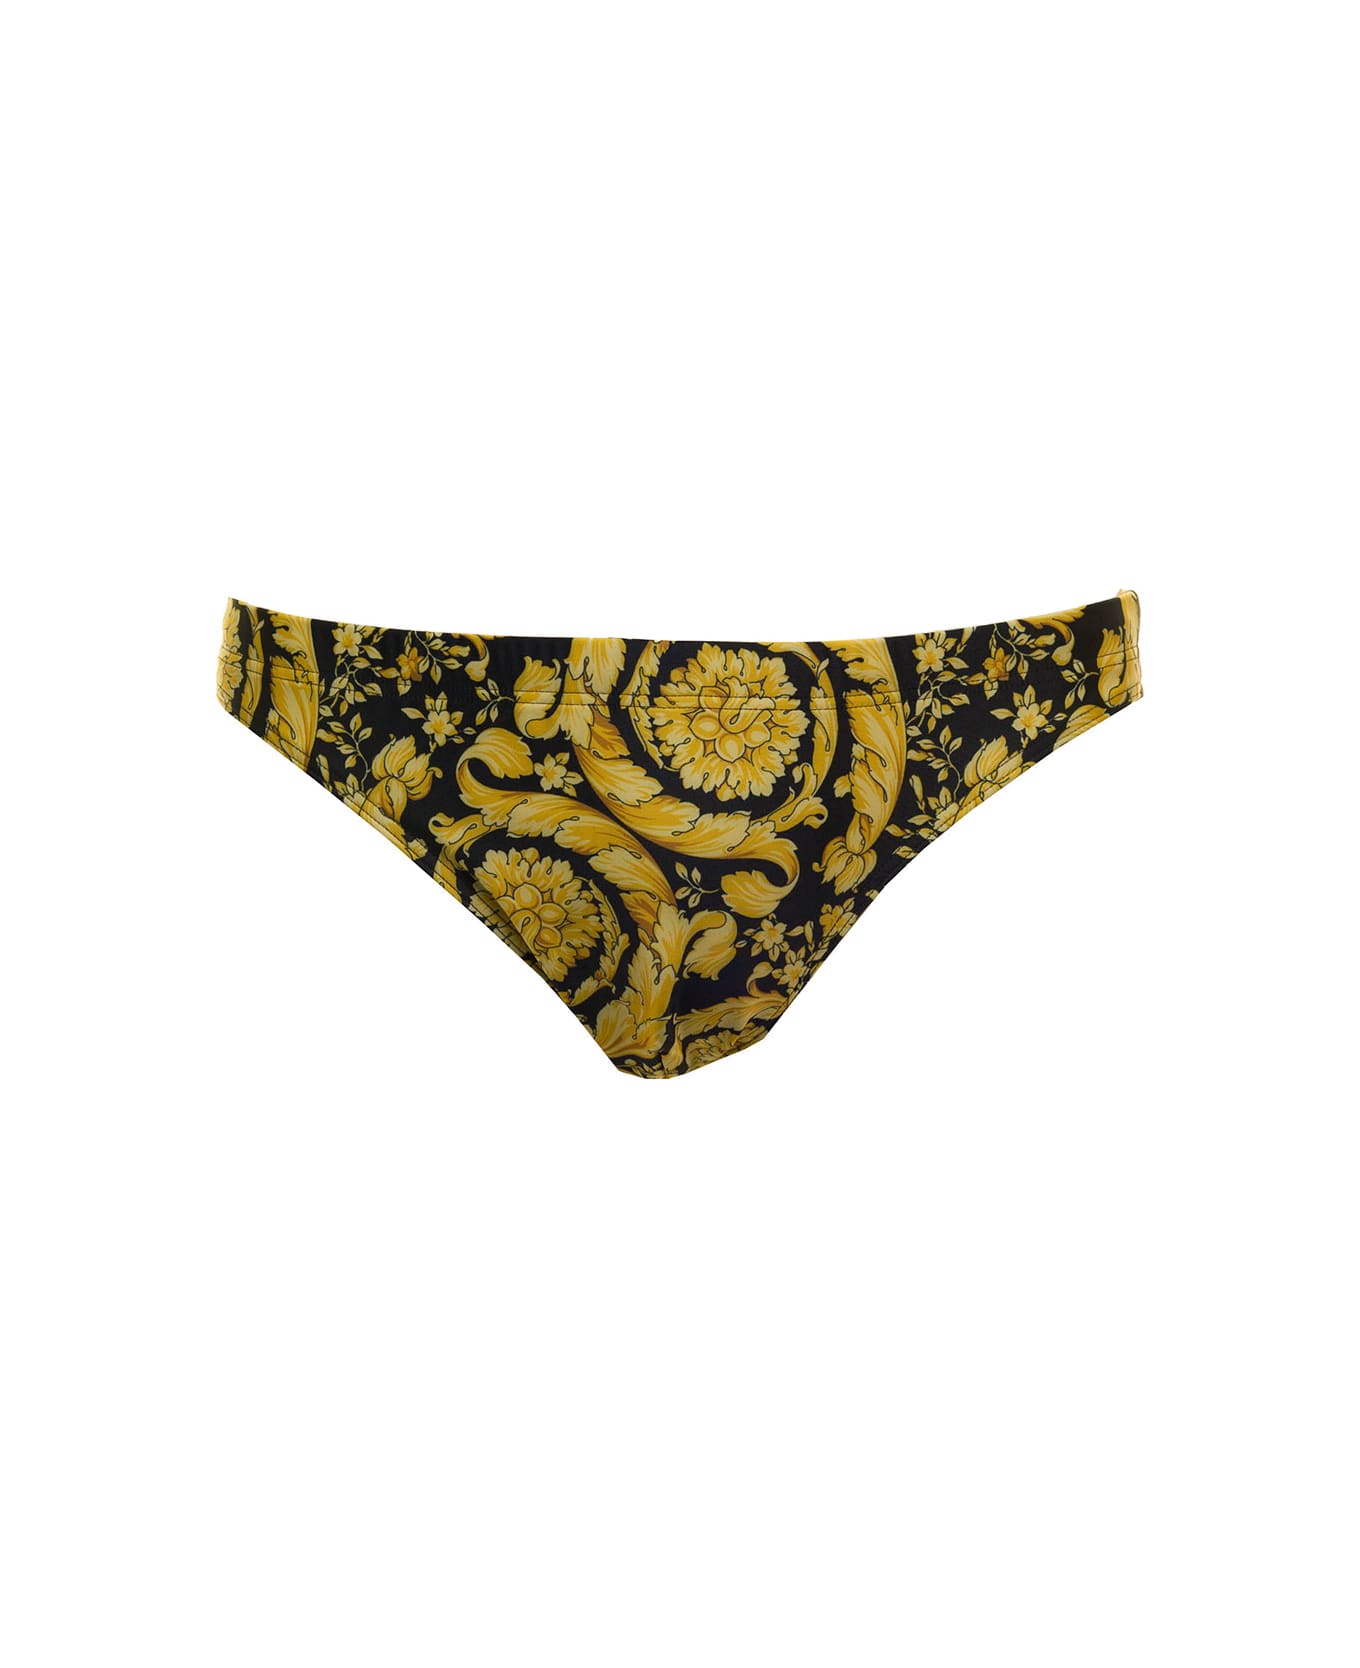 Versace Baroque Printed Swim Shorts - Multicolor